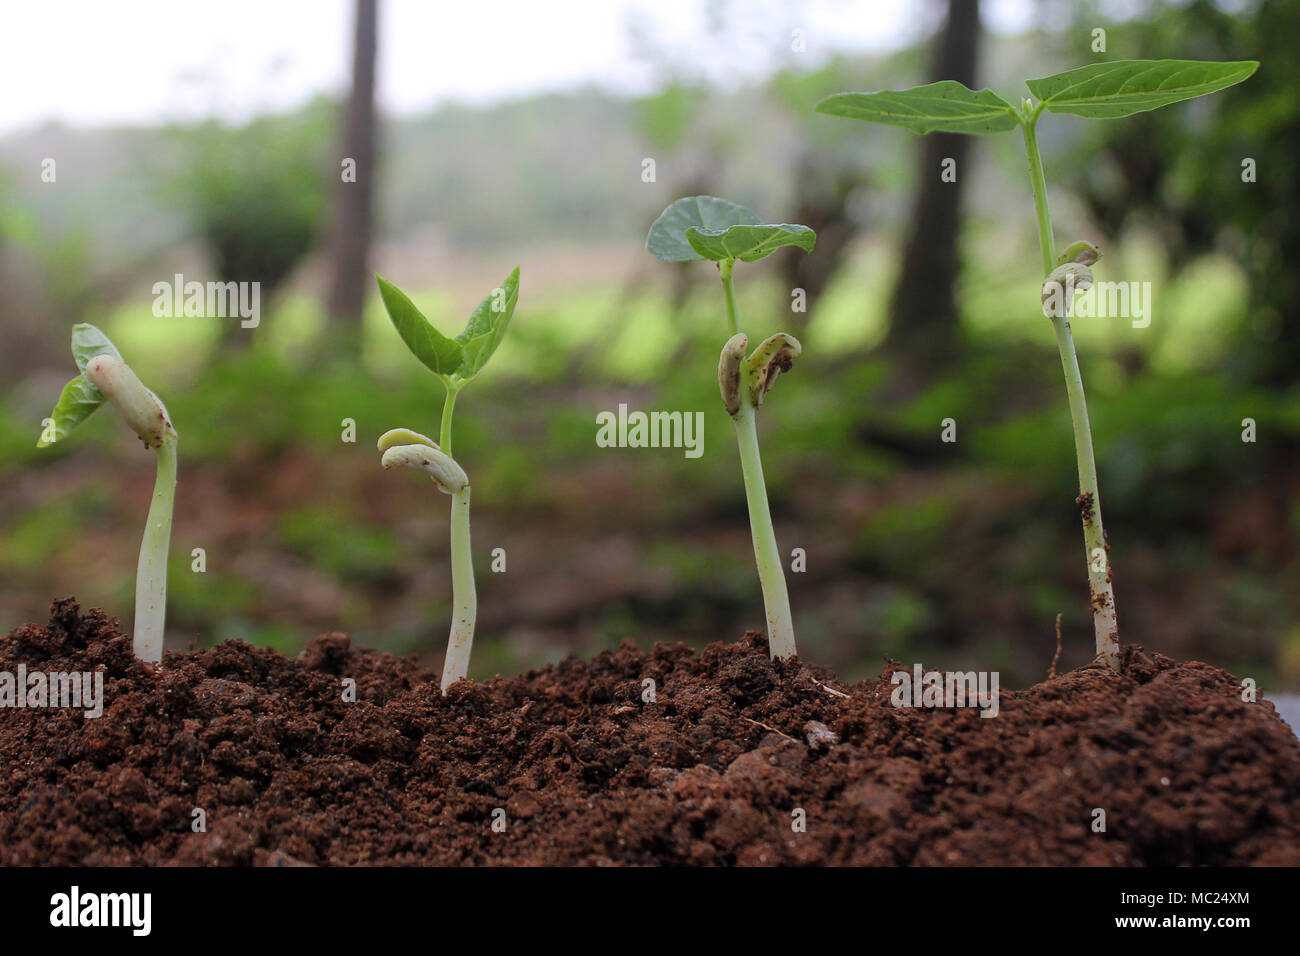 Das Wachstum der Pflanzen - Stufen der wachsenden Pflanzen Stockfotografie  - Alamy